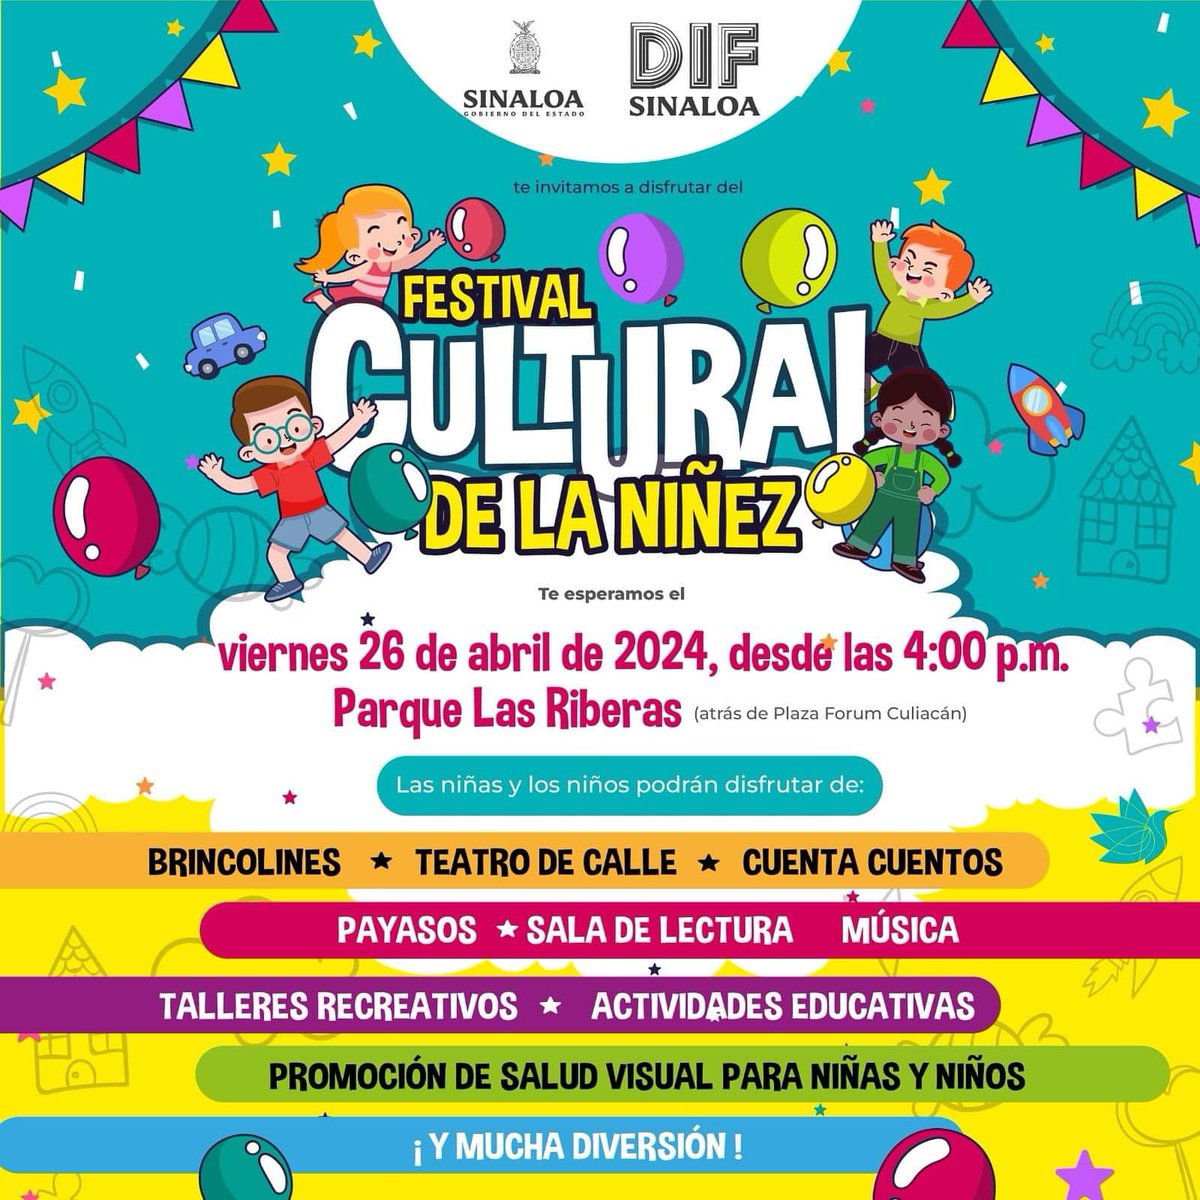 ¡Atención! El viernes 26 de abril, te esperamos en el Festival Cultural de la Niñez en el Parque Las Riberas de Culiacán. Desde las 4:00 p.m. habrá actividades para niños y niñas, incluyendo brincolines, teatro, cuentacuentos, música y mucho más. ¡No te lo pierdas!